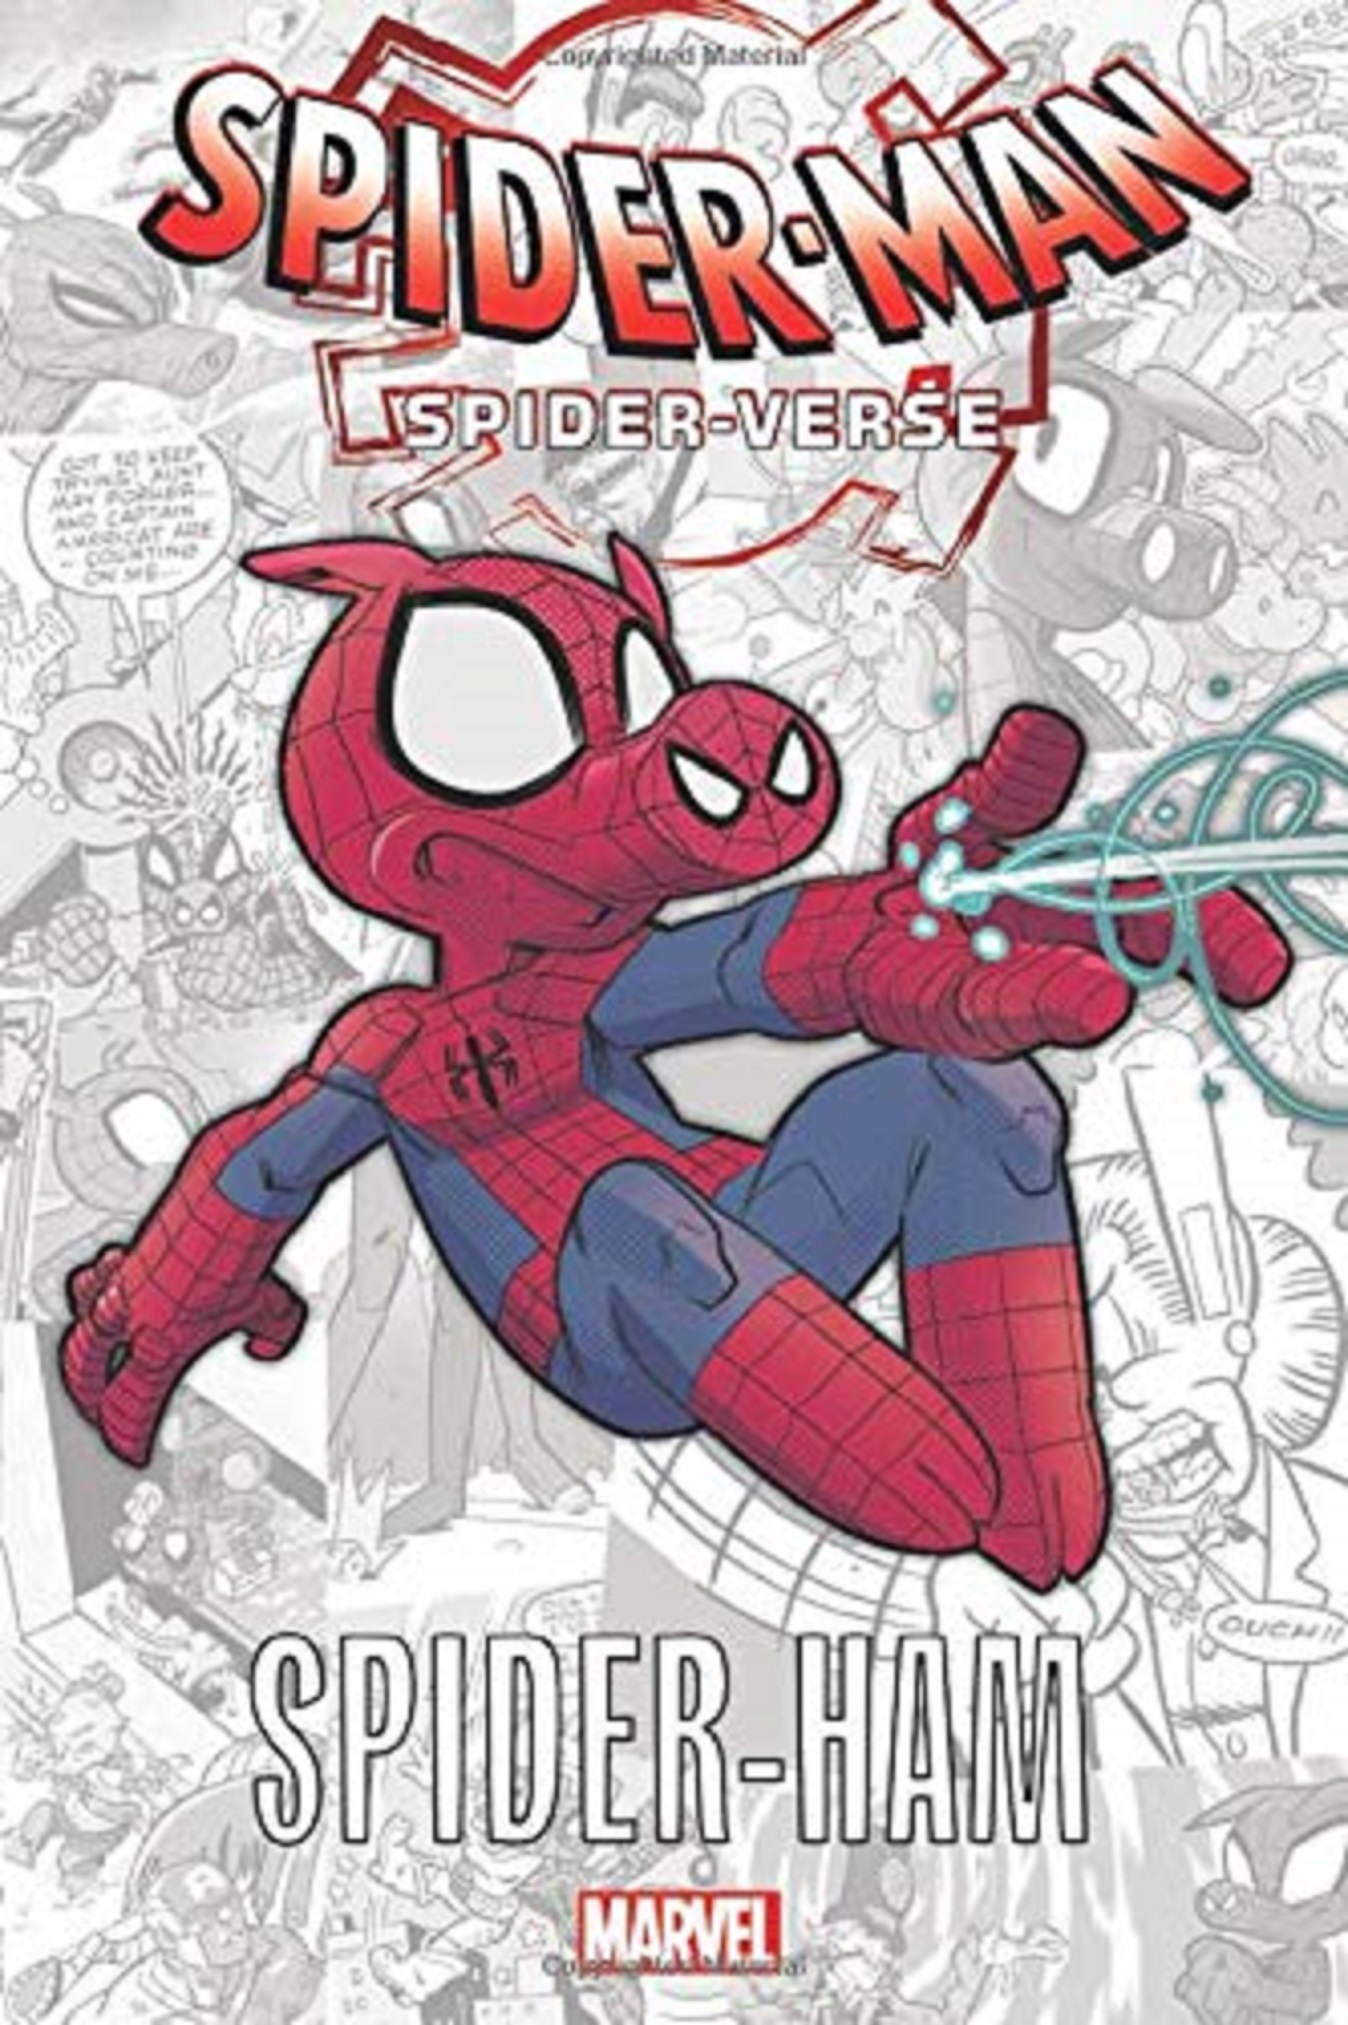 Spider-man: Spider-verse - Spider-ham | Tom DeFalco, Steve Skeates, Ralph Macchio